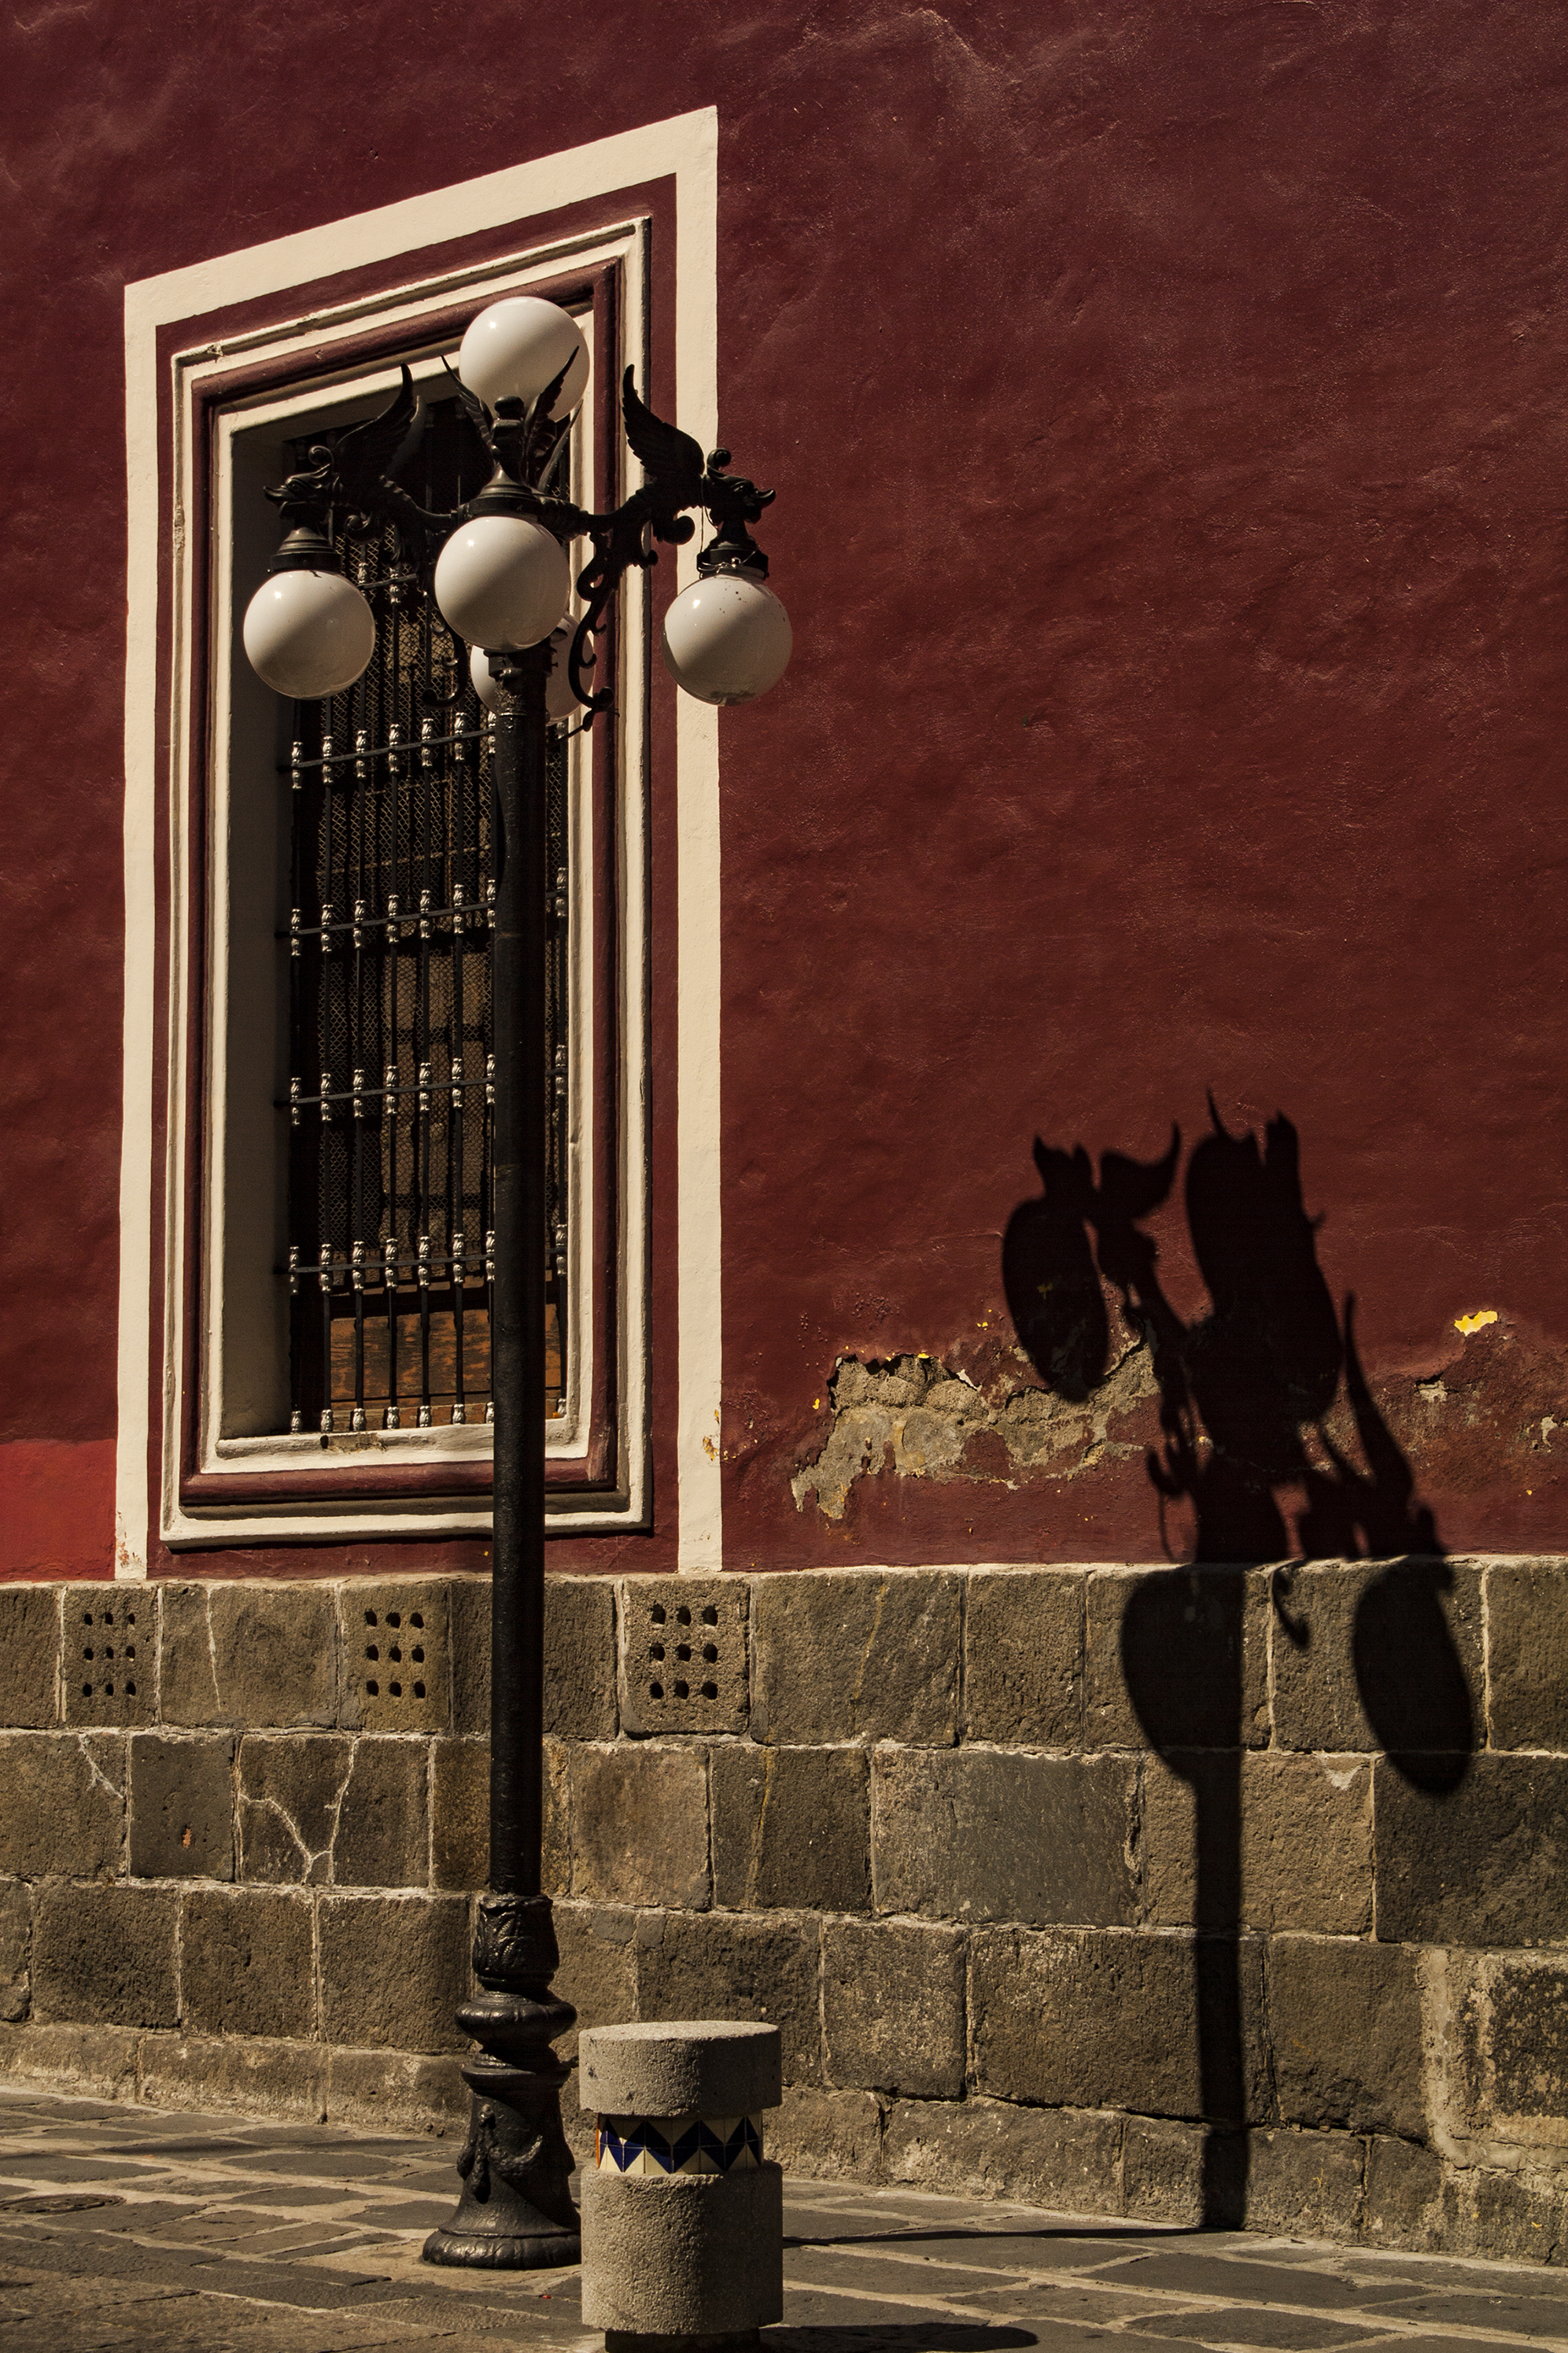 La sombra Centro hist´rico, ciudad de Puebla, Puebla, México